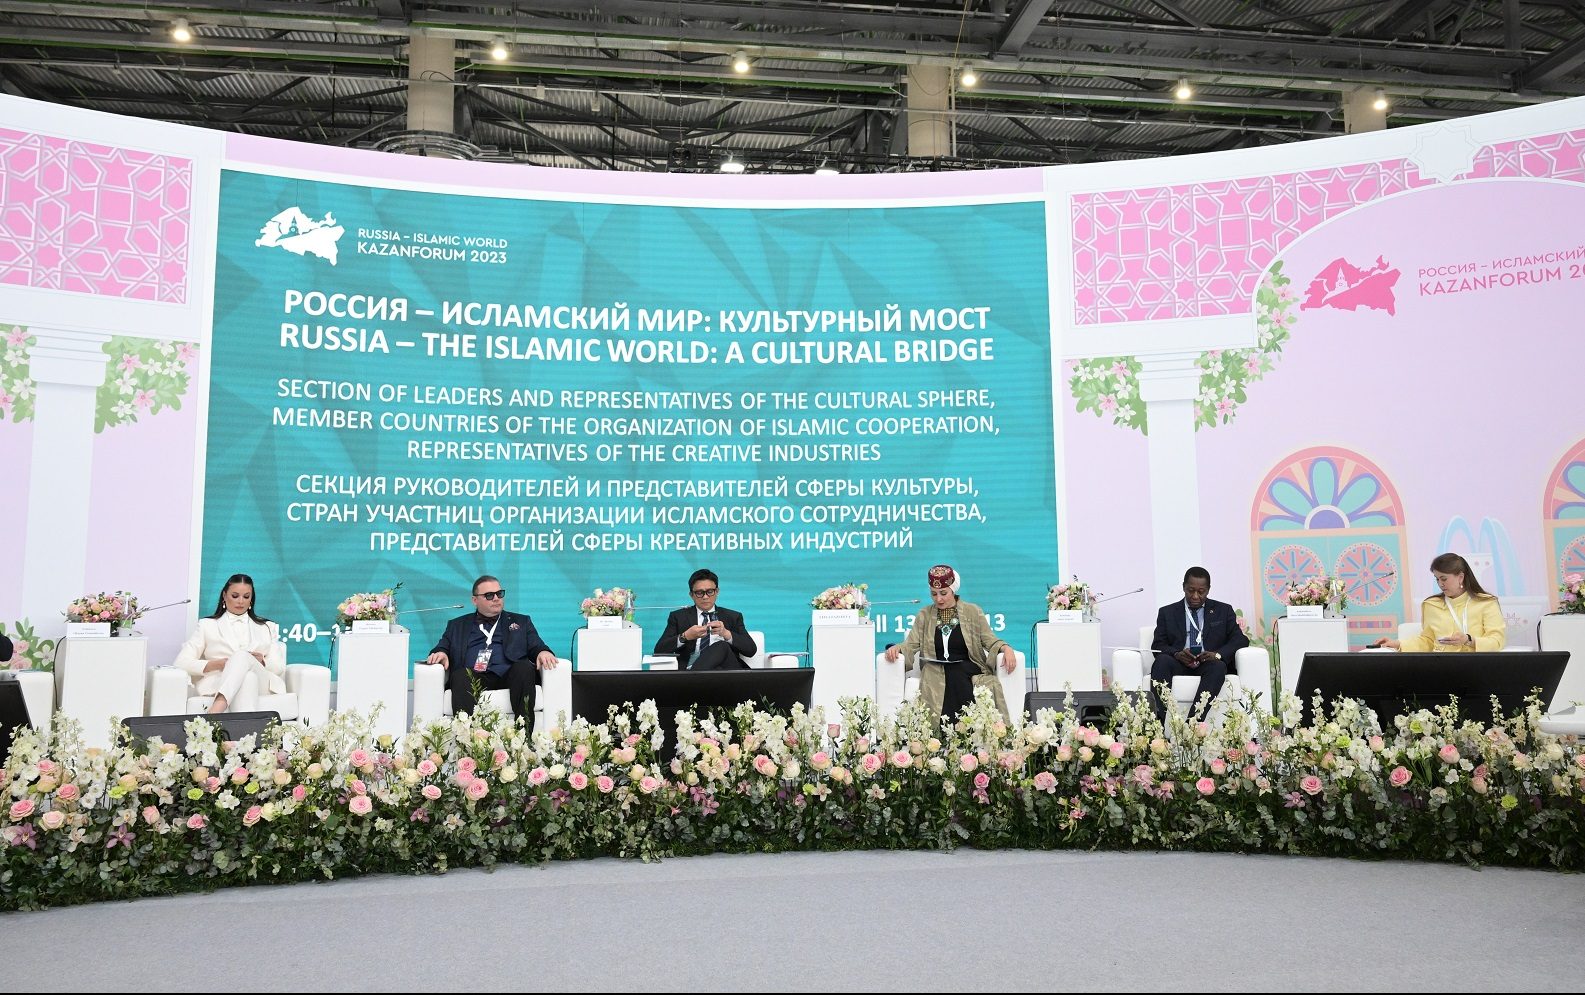 Итоги KazanForum 2023: 130 соглашений и 86 стран-участниц